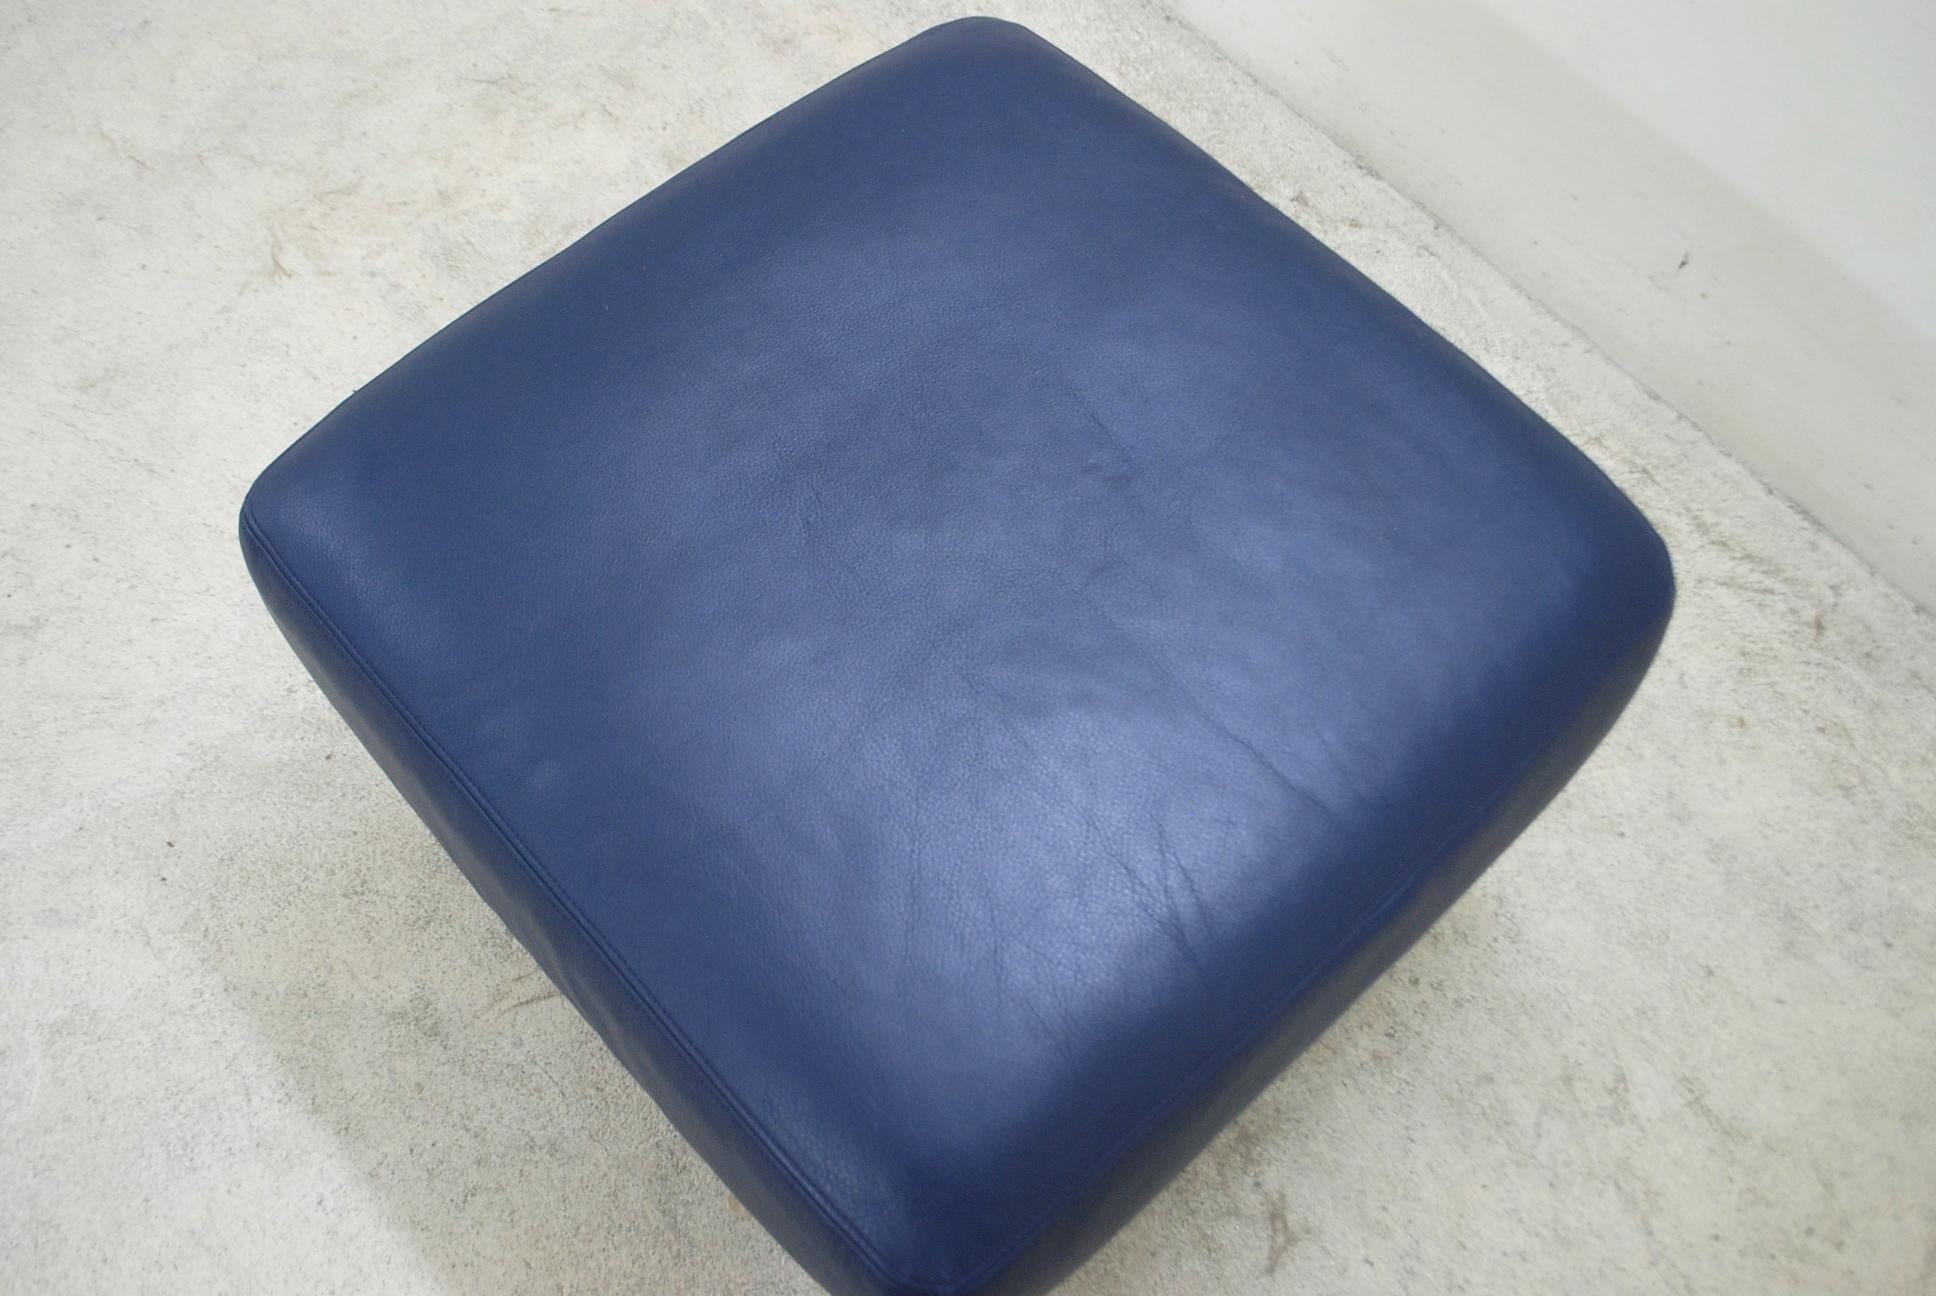 De Sede DS 17 Blue Leather Ottoman or Pouf For Sale 1